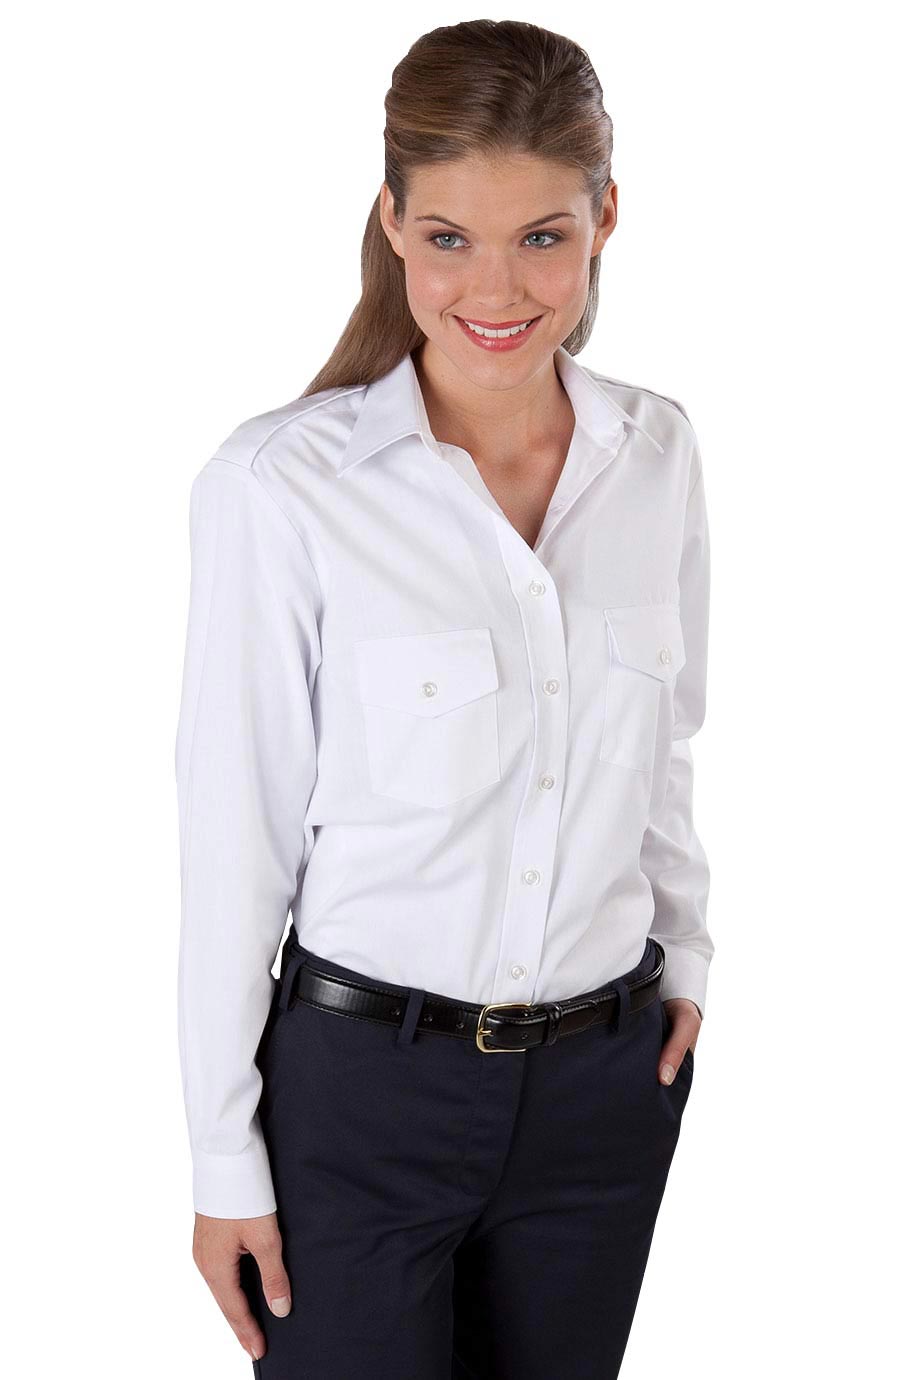 Edwards Garment 5262 - Women's Long Sleeve Navigator Shirt